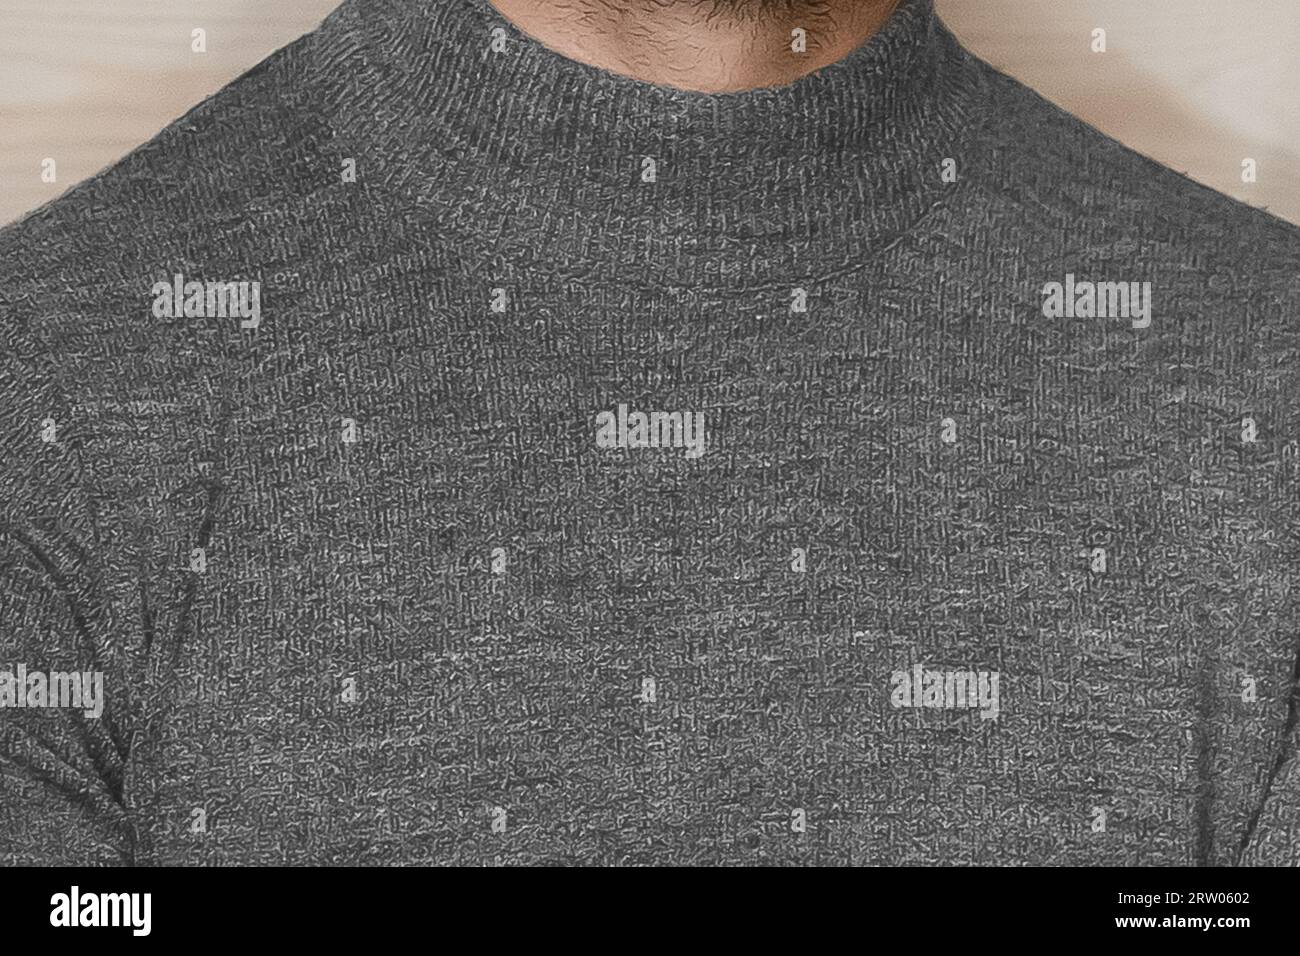 Close-up grey turtleneck men's style clothing fashion. Stock Photo